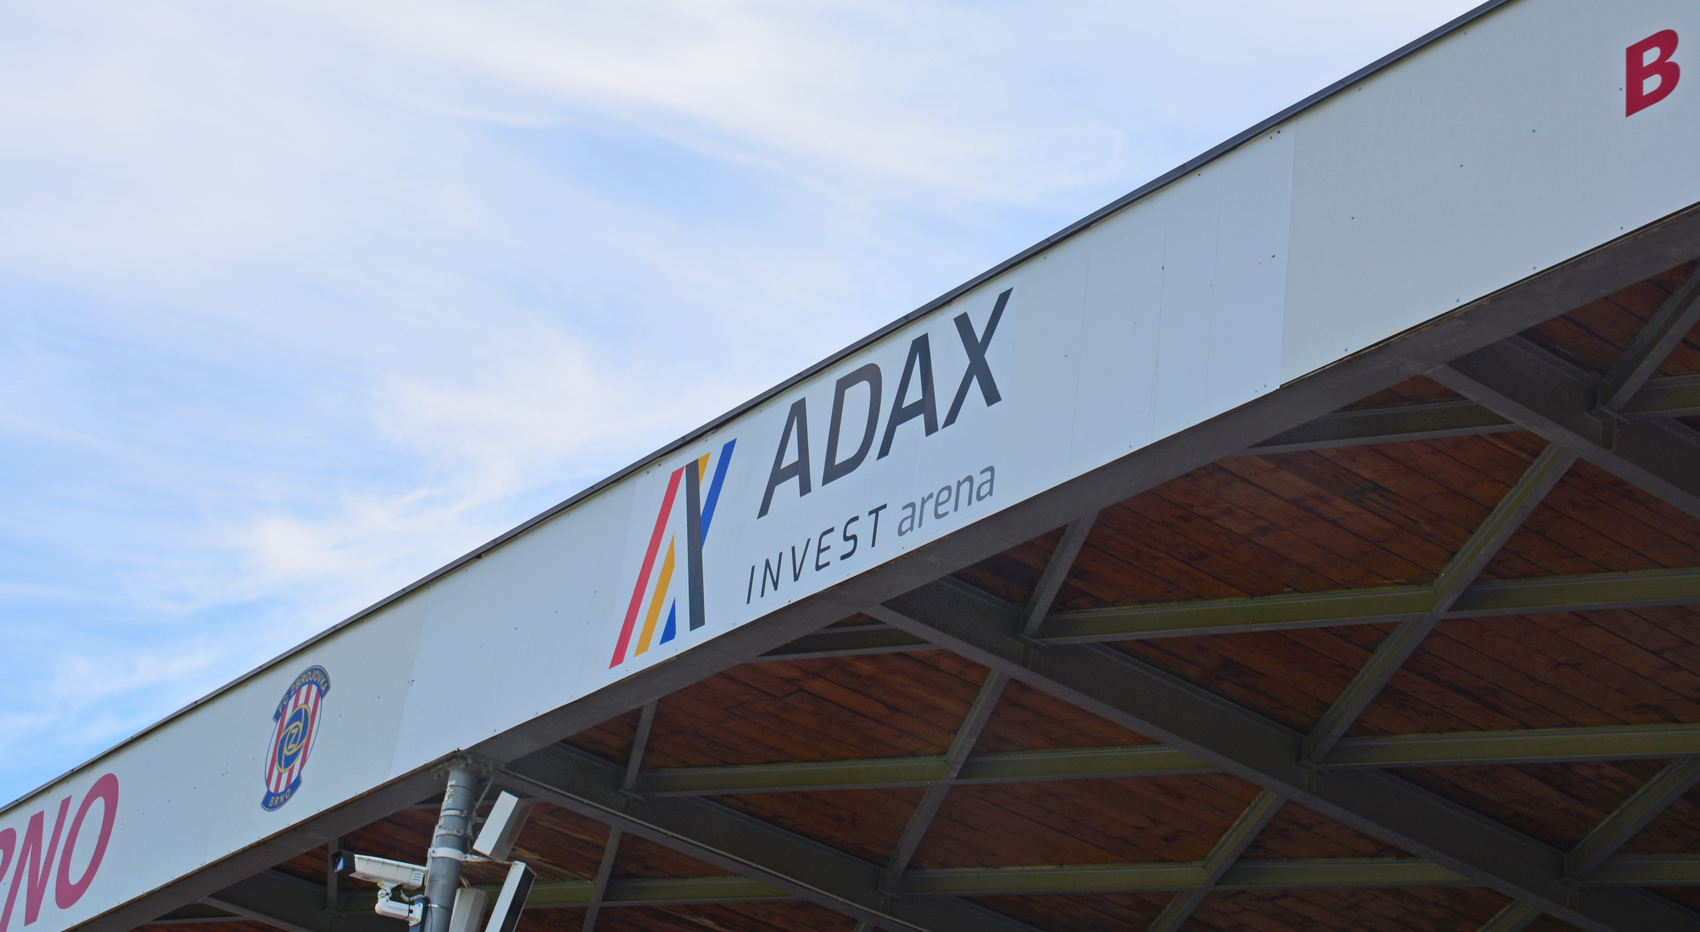 Do nové sezóny s novým názvem stadionu – ADAX INVEST Arena